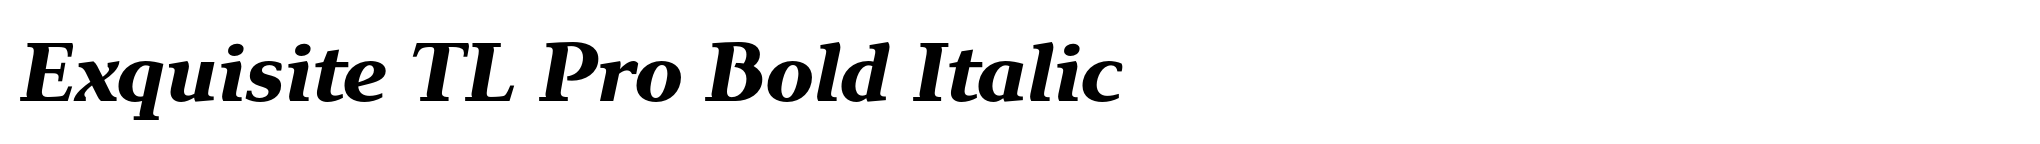 Exquisite TL Pro Bold Italic image